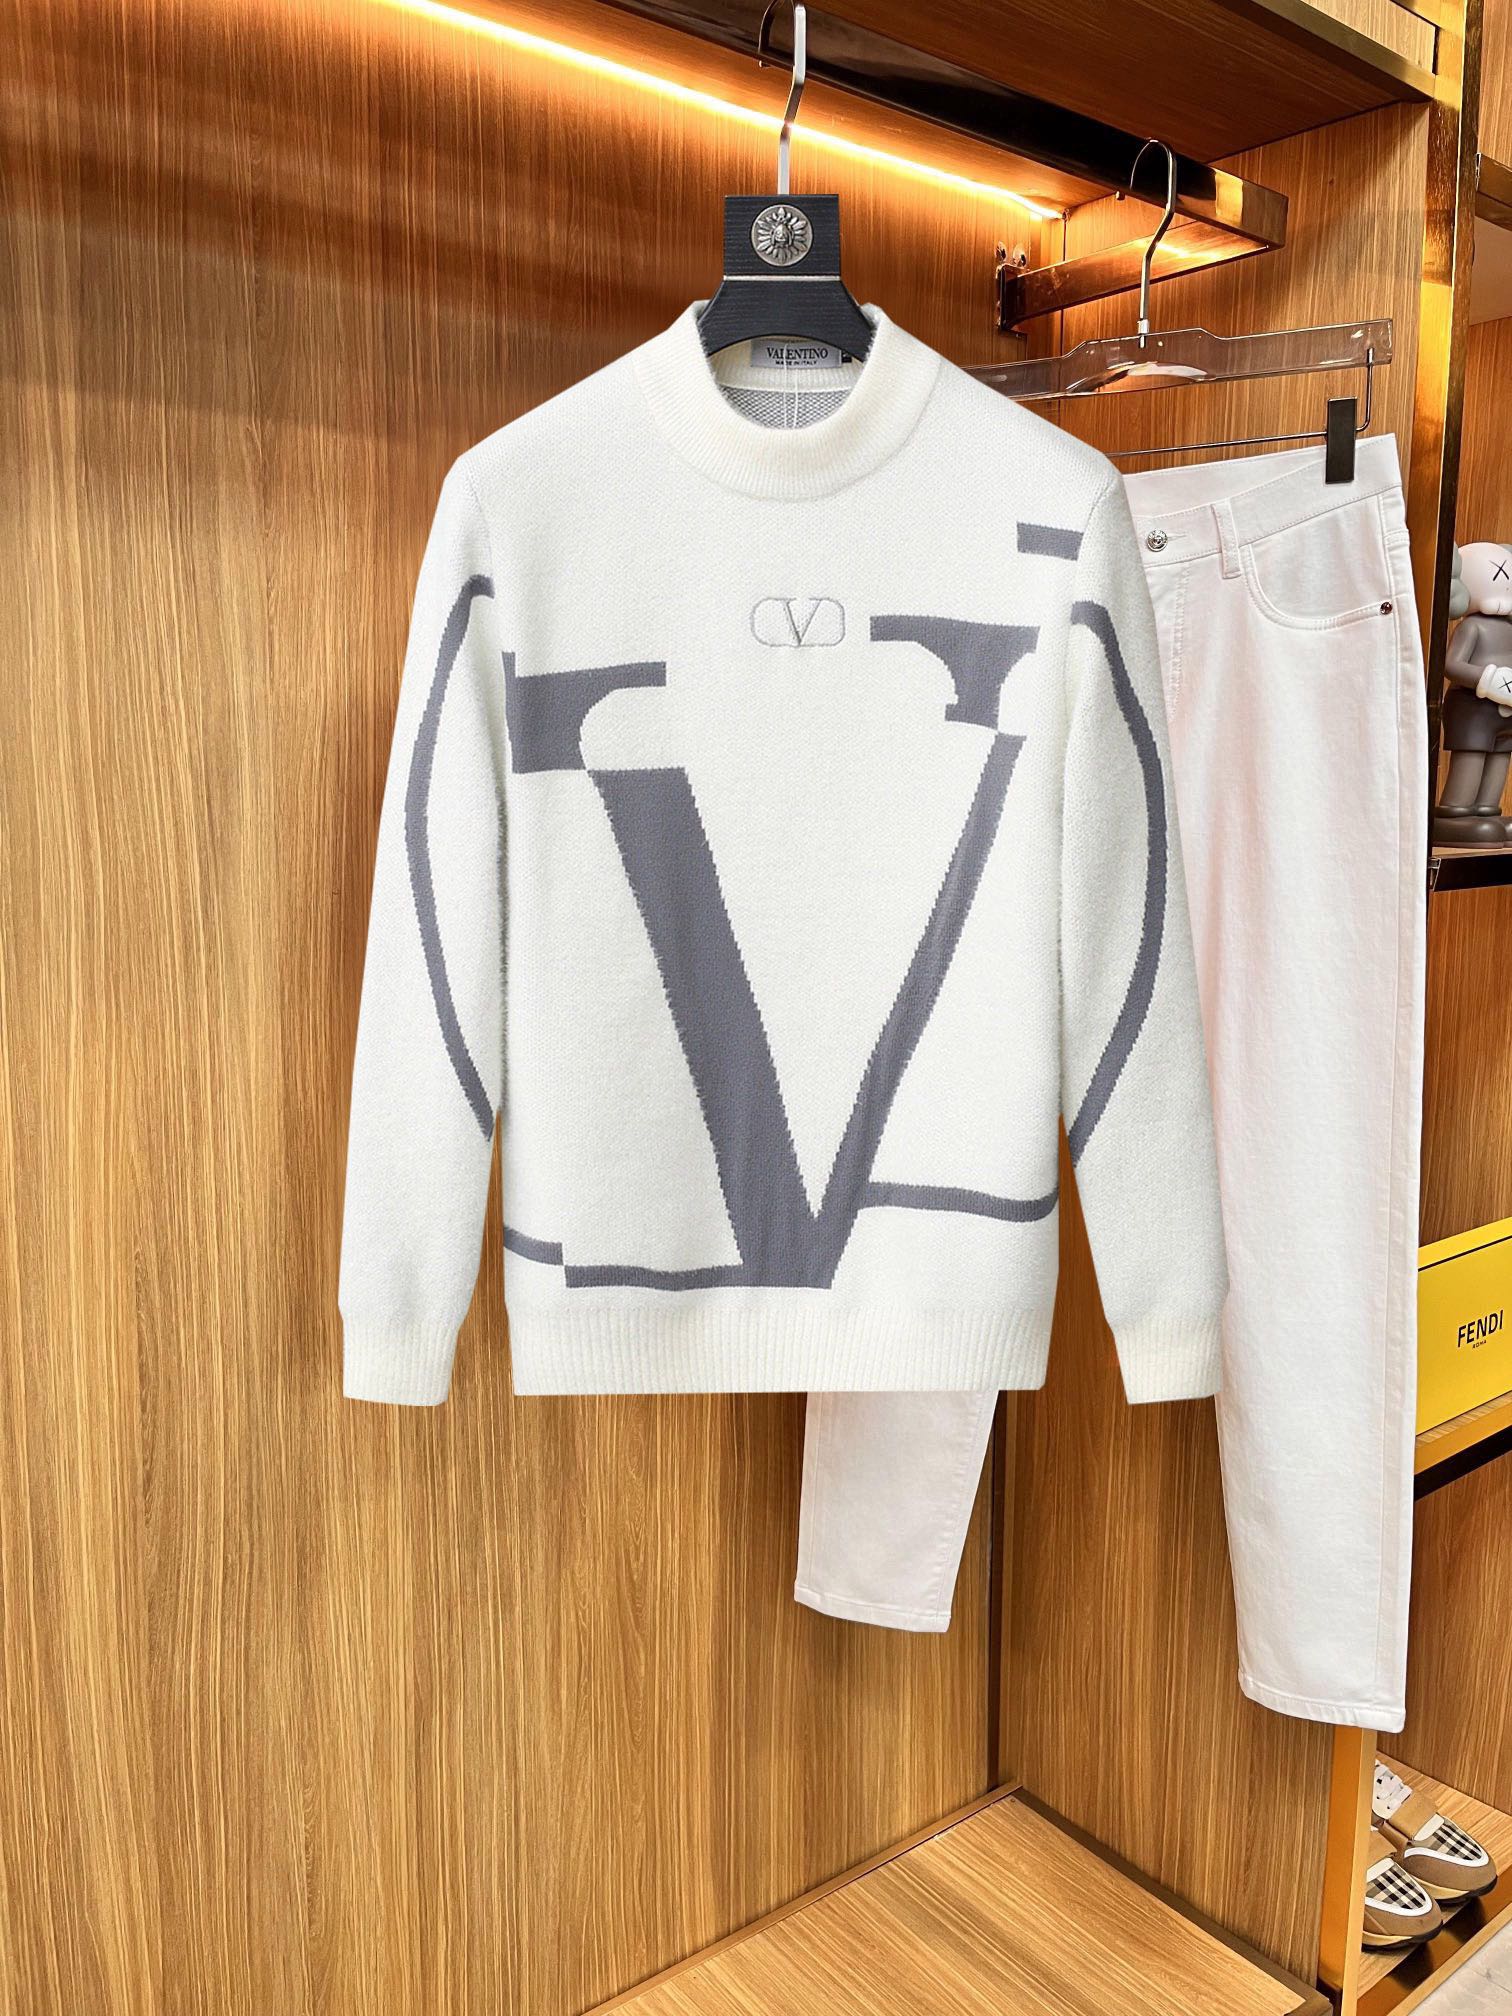 valentino 超激得新品 ヴァレンチノとはスーパーコピー トップス セーター 柔らかい 保温 暖かい 長袖 ファッション 2色可選_1